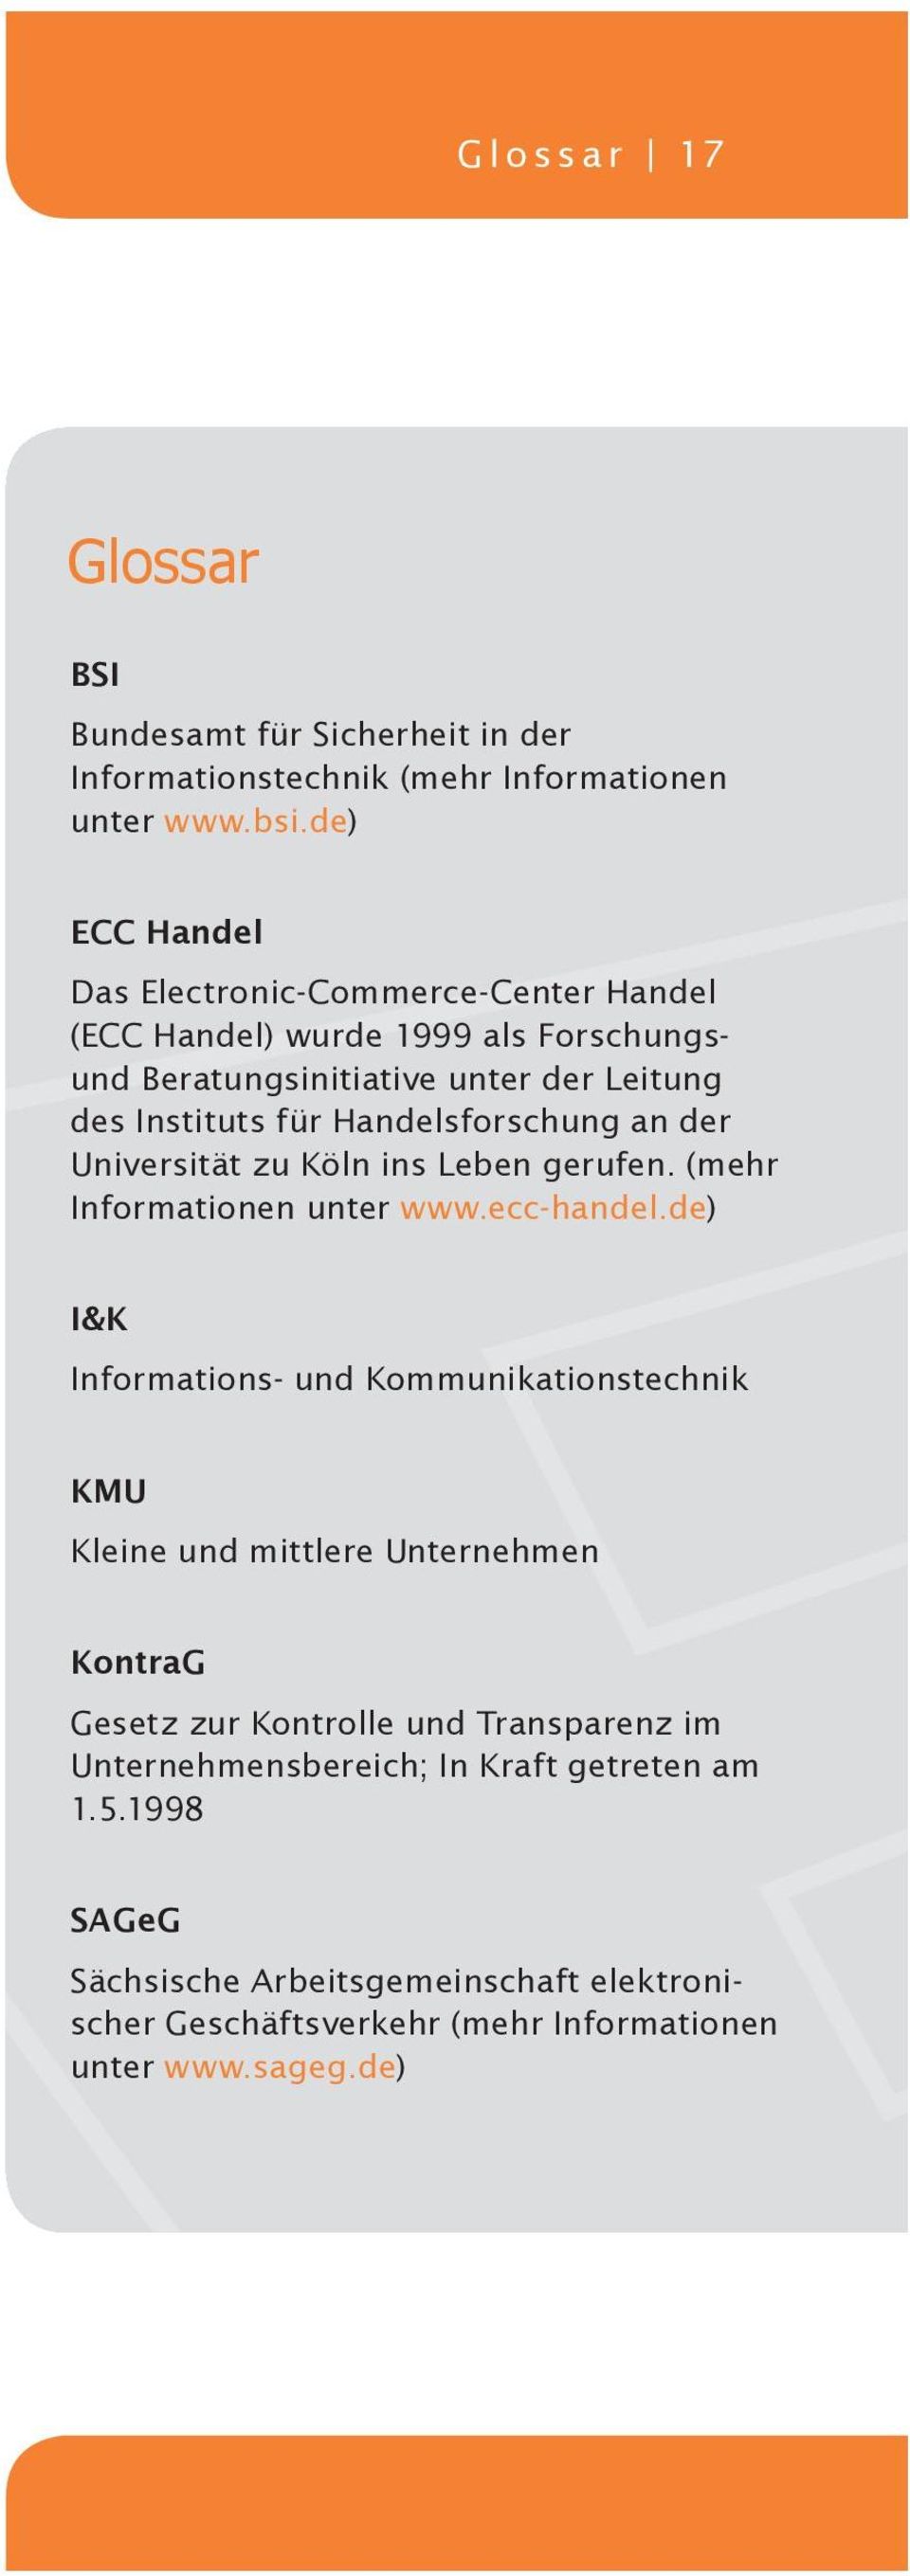 Handelsforschung an der Universität zu Köln ins Leben gerufen. (mehr Informationen unter www.ecc-handel.